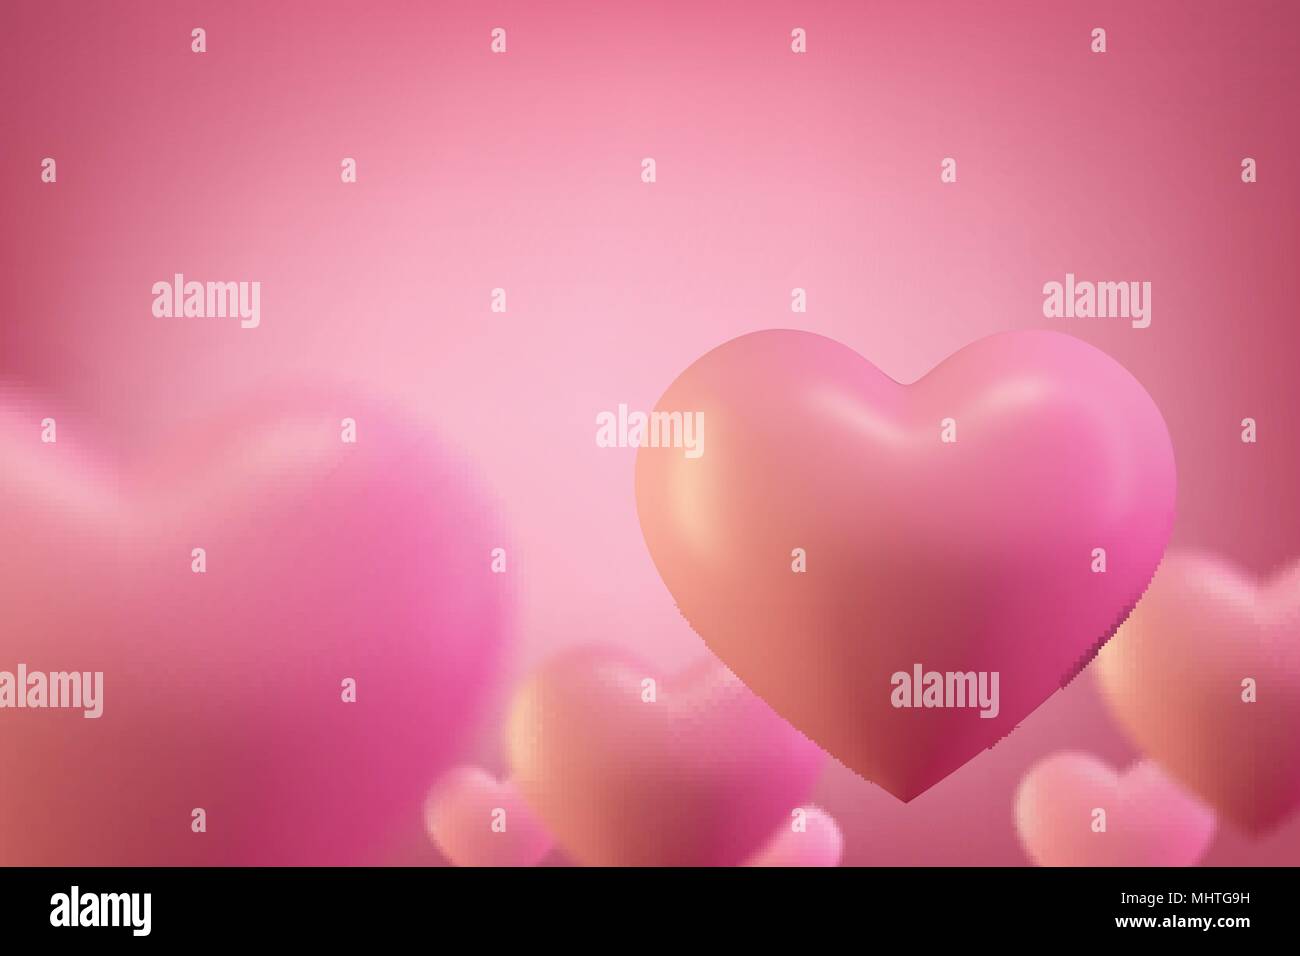 Liebe Herz Hintergrund. Valentine Hintergrund. Romantische Hochzeit Hintergrund, Valentines Tag Konzept. Stock Vektor